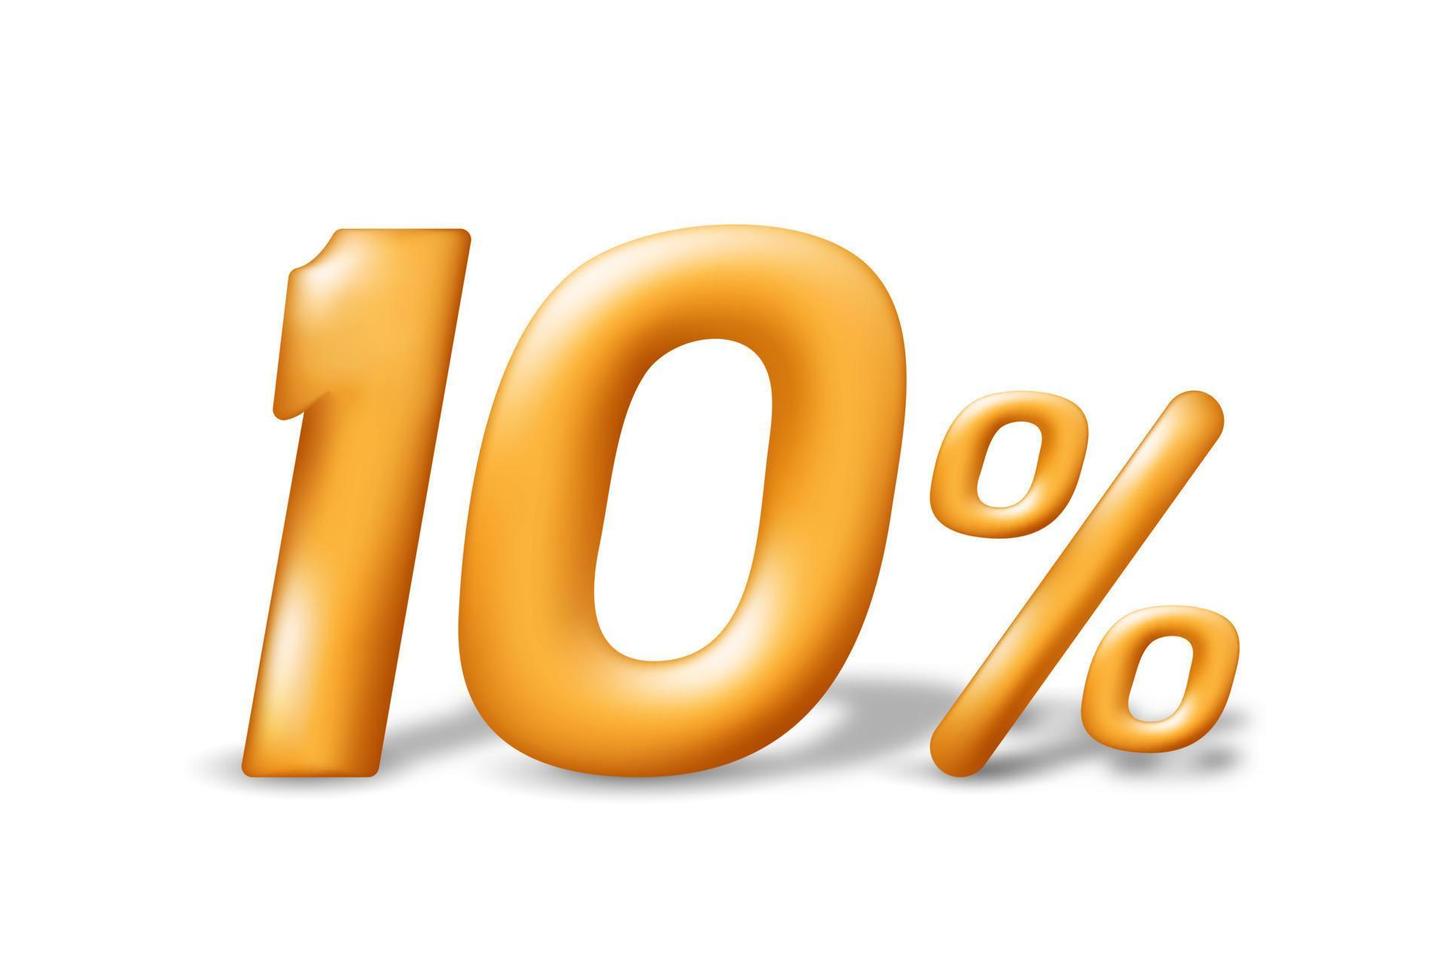 vente spéciale 10 pour cent de réduction. nombre 3d doré réaliste isolé sur fond blanc. illustration vectorielle vecteur